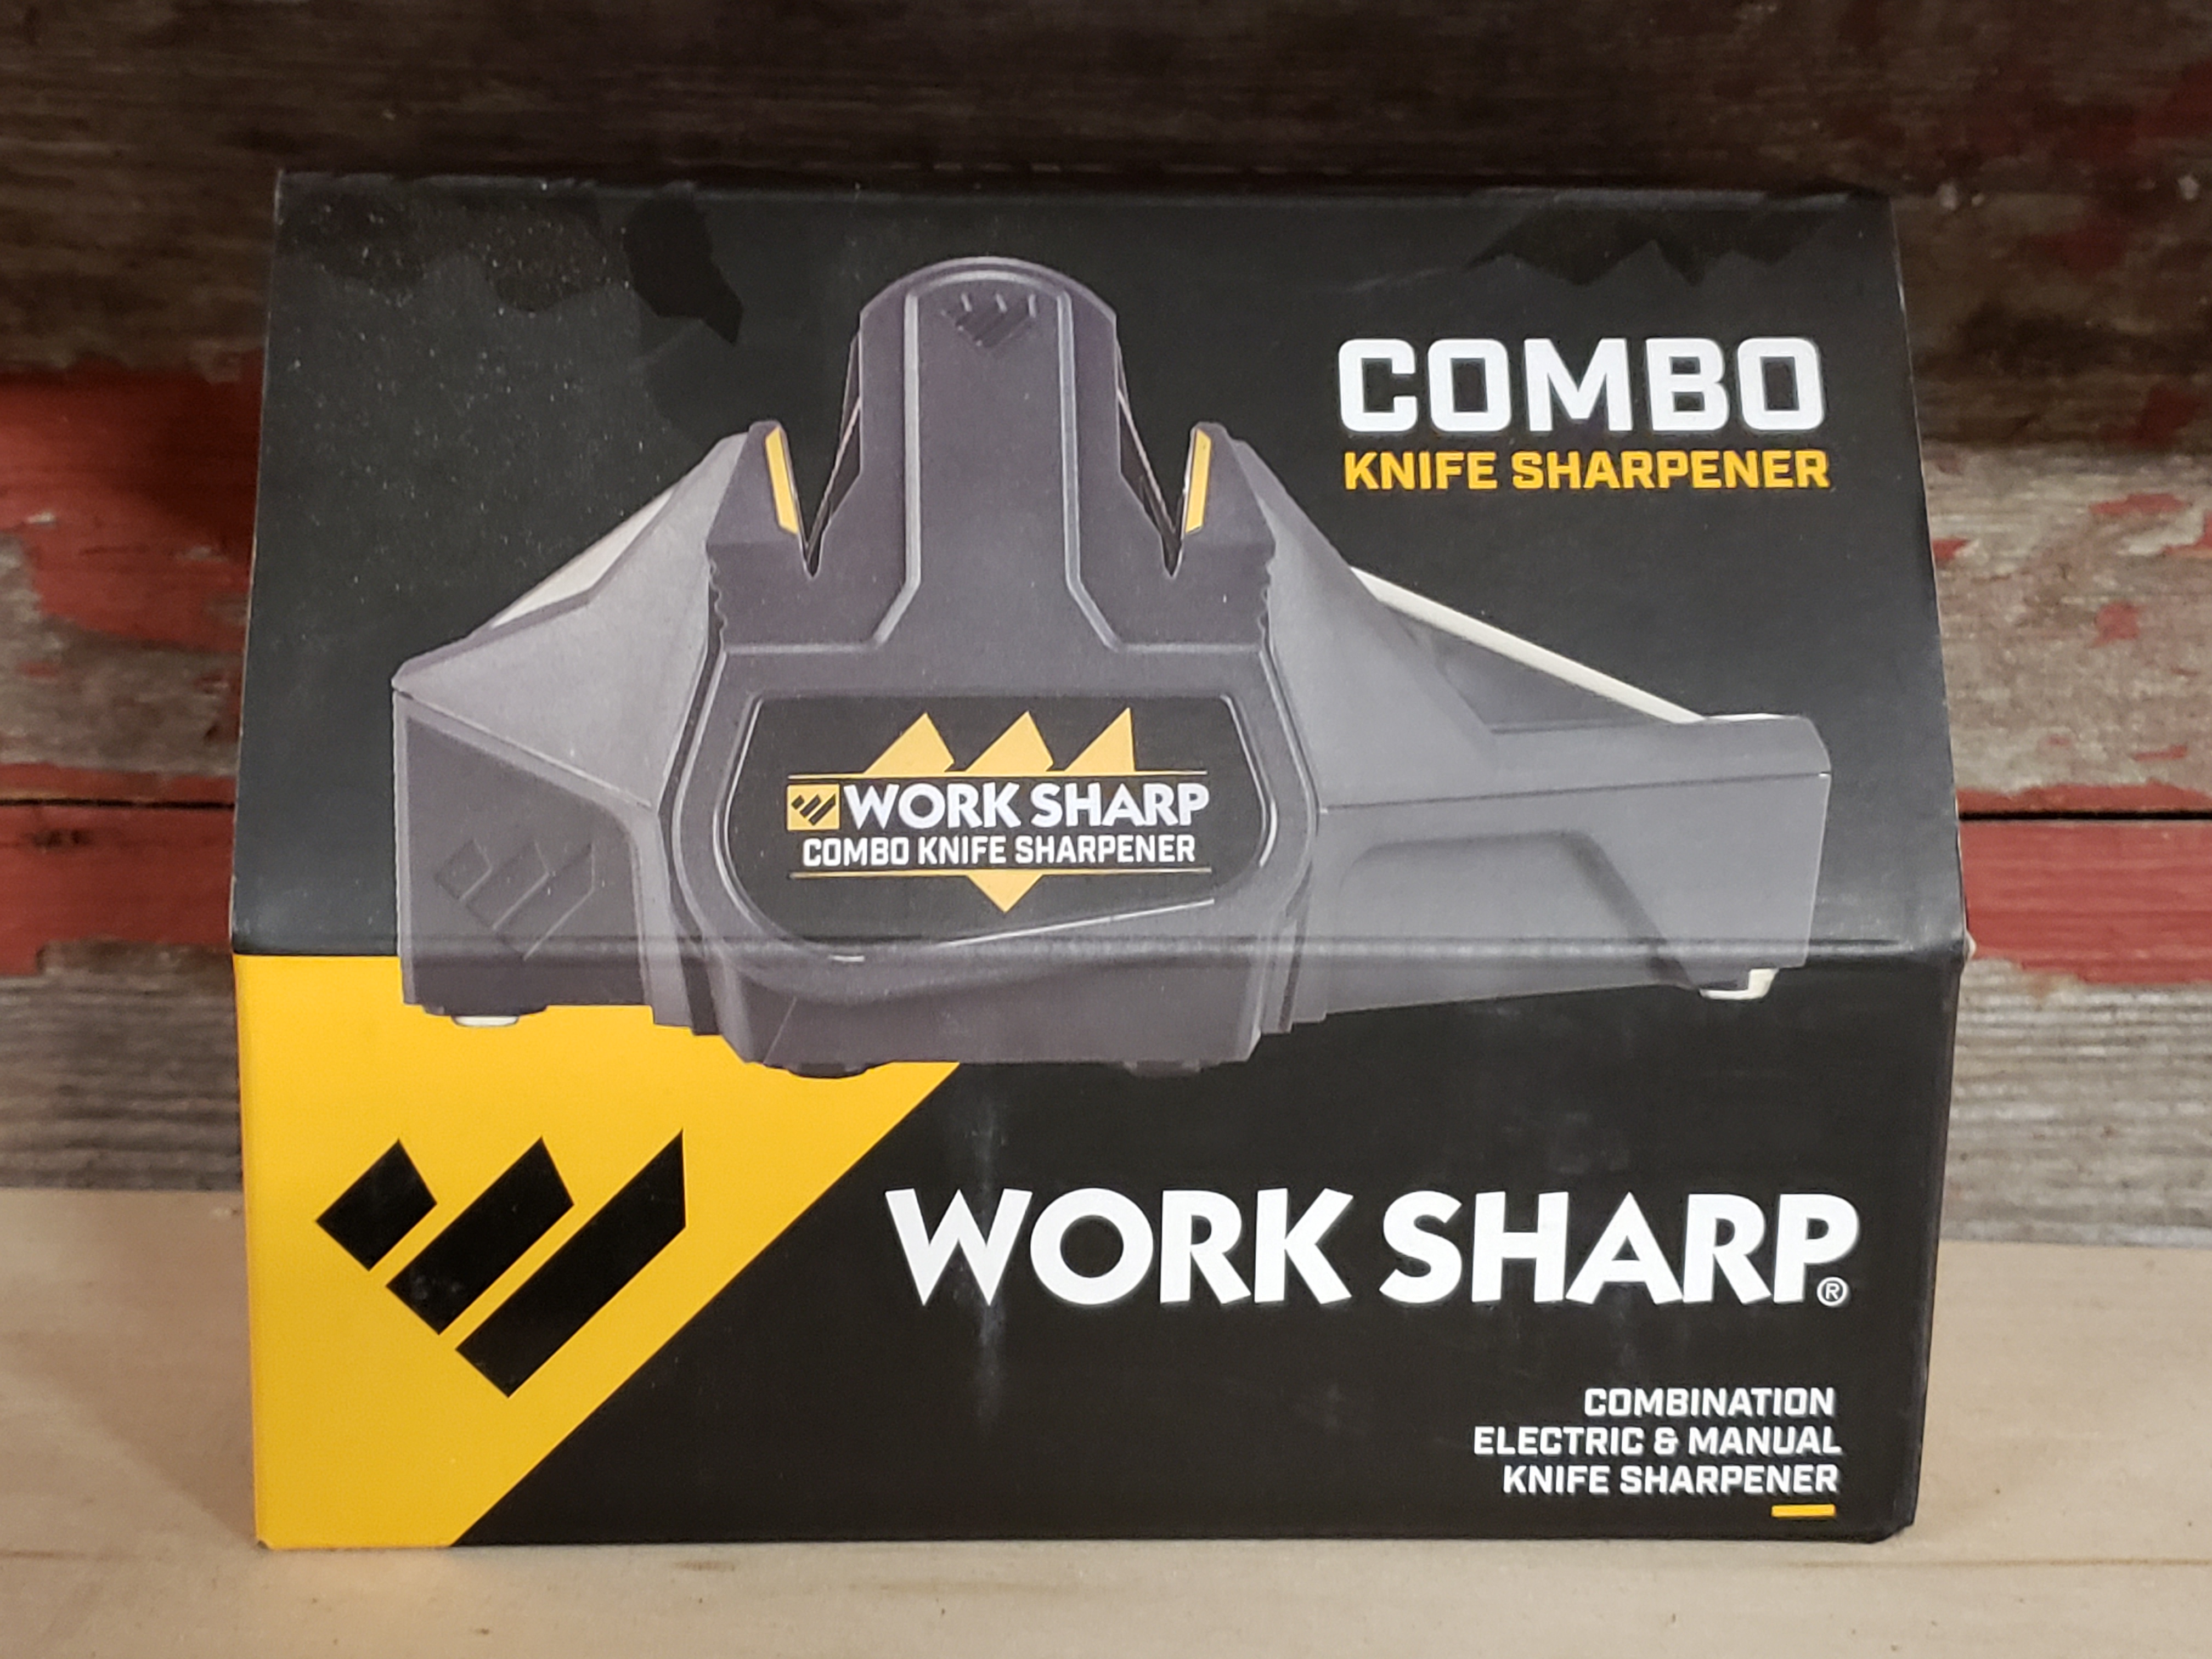 Work Sharp's New Combo Knife Sharpener